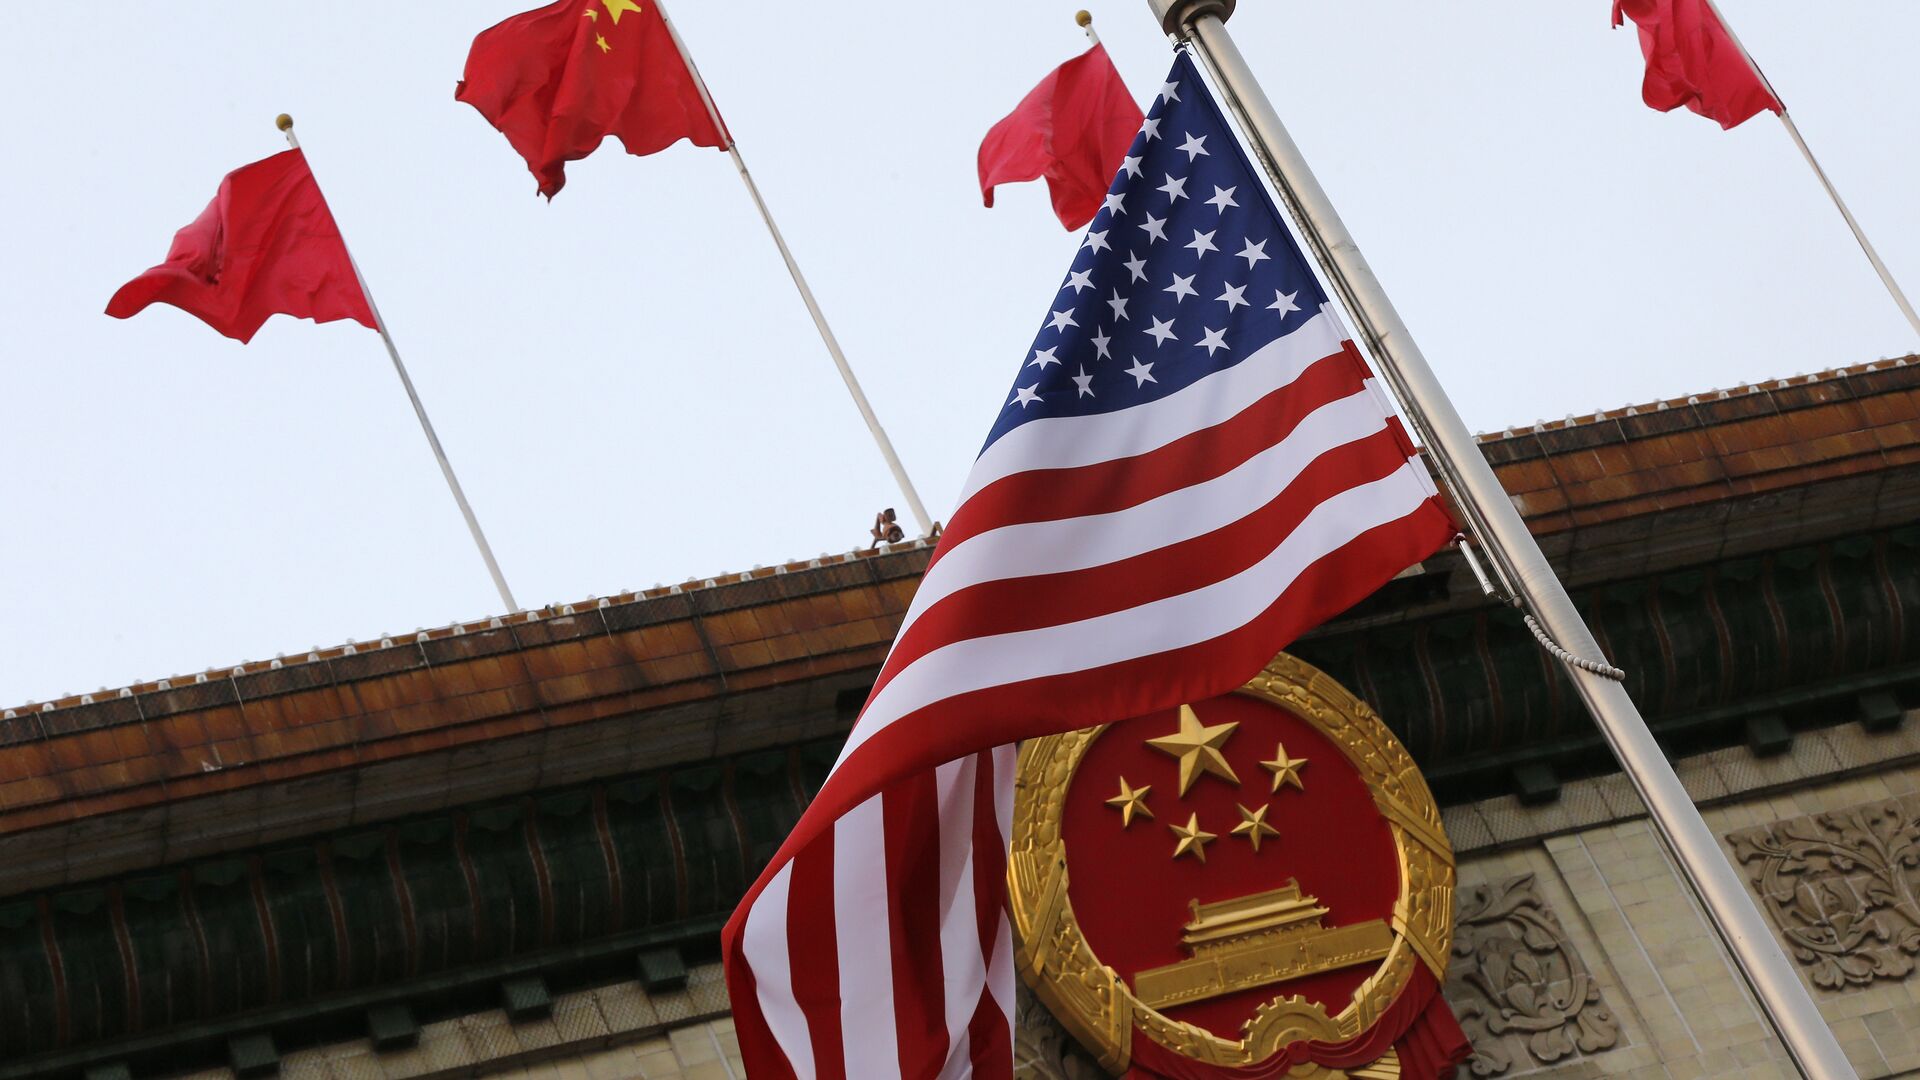 Флаги США и Китая во время визита Дональда Трампа в Пекин 9 ноября 2017 года - Sputnik Latvija, 1920, 15.02.2021